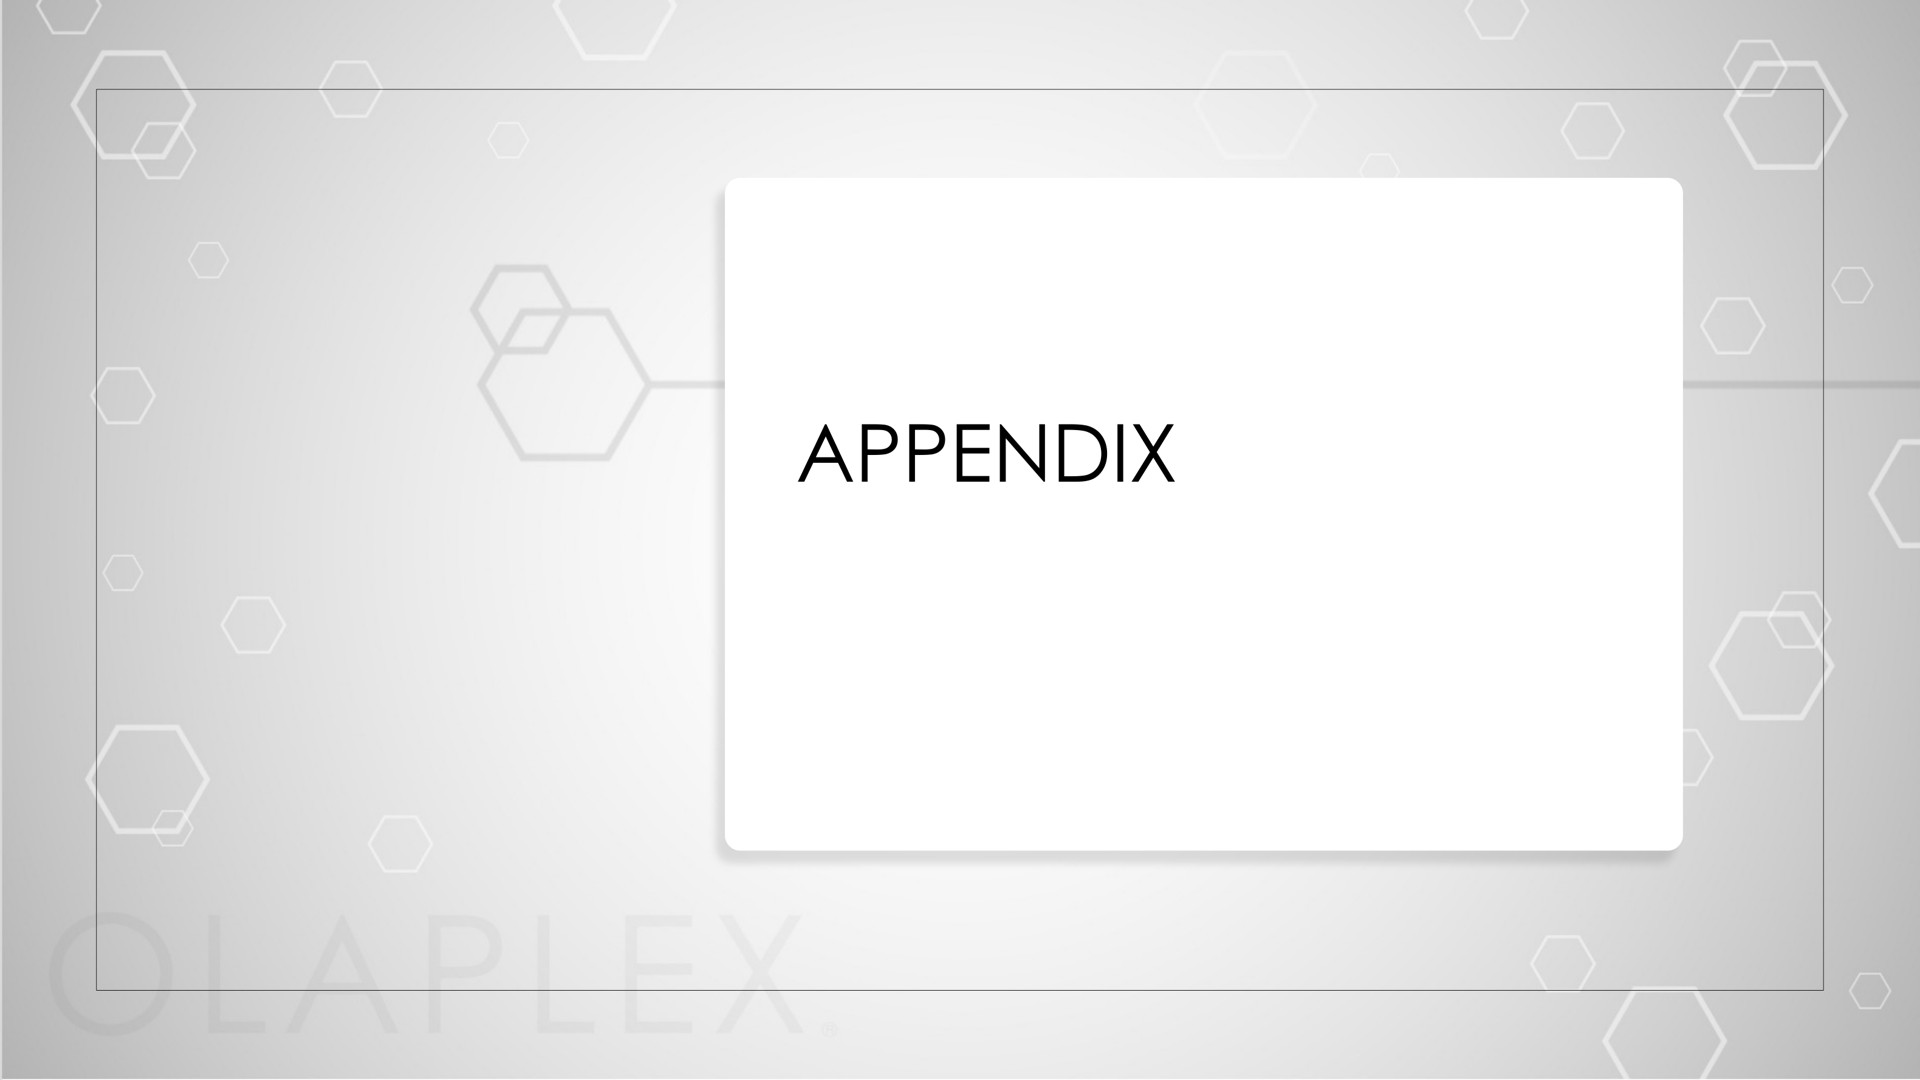 appendix | Olaplex